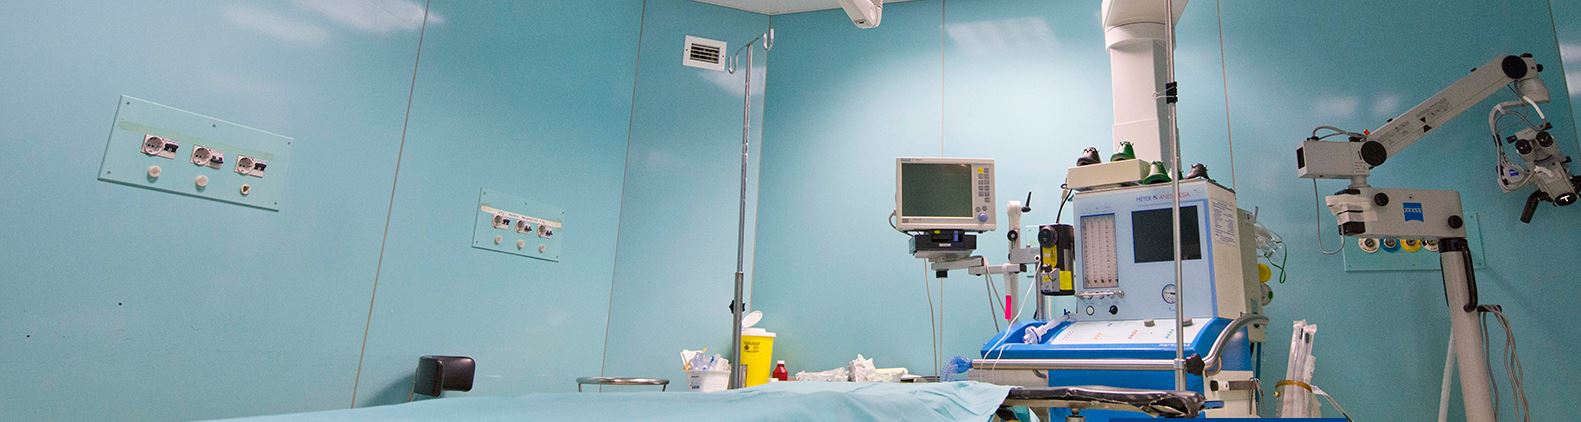 Κεντρική Κλινική Αθηνών – Ανέλαβε τη νοσηλεία ασθενών με COVID-19